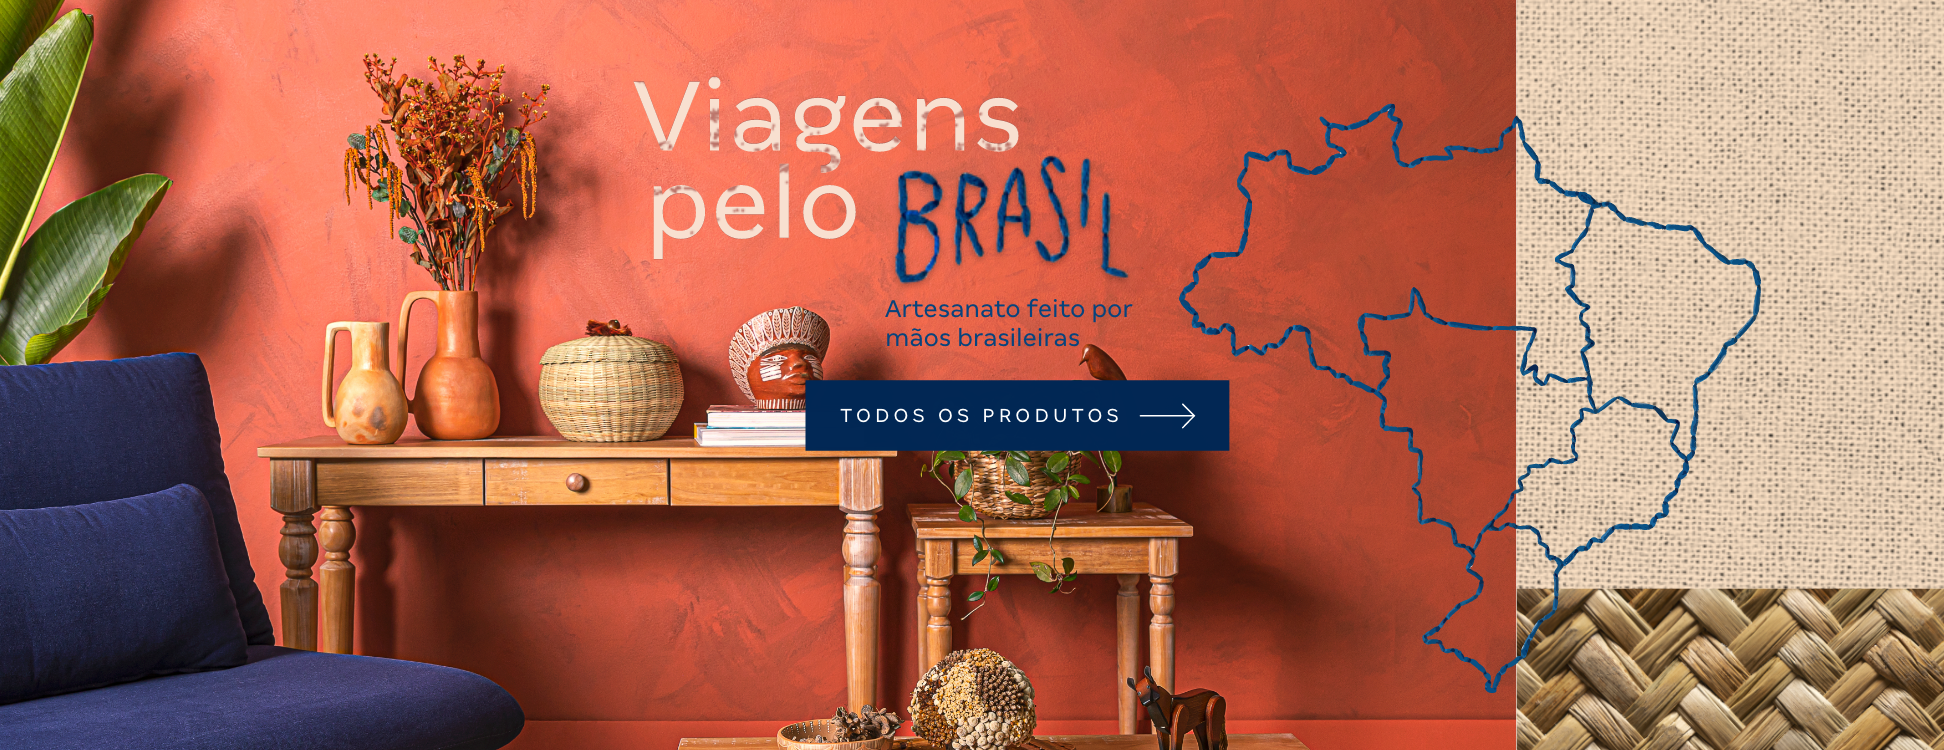 Banner - Hotsite Viagens pelo Brasil